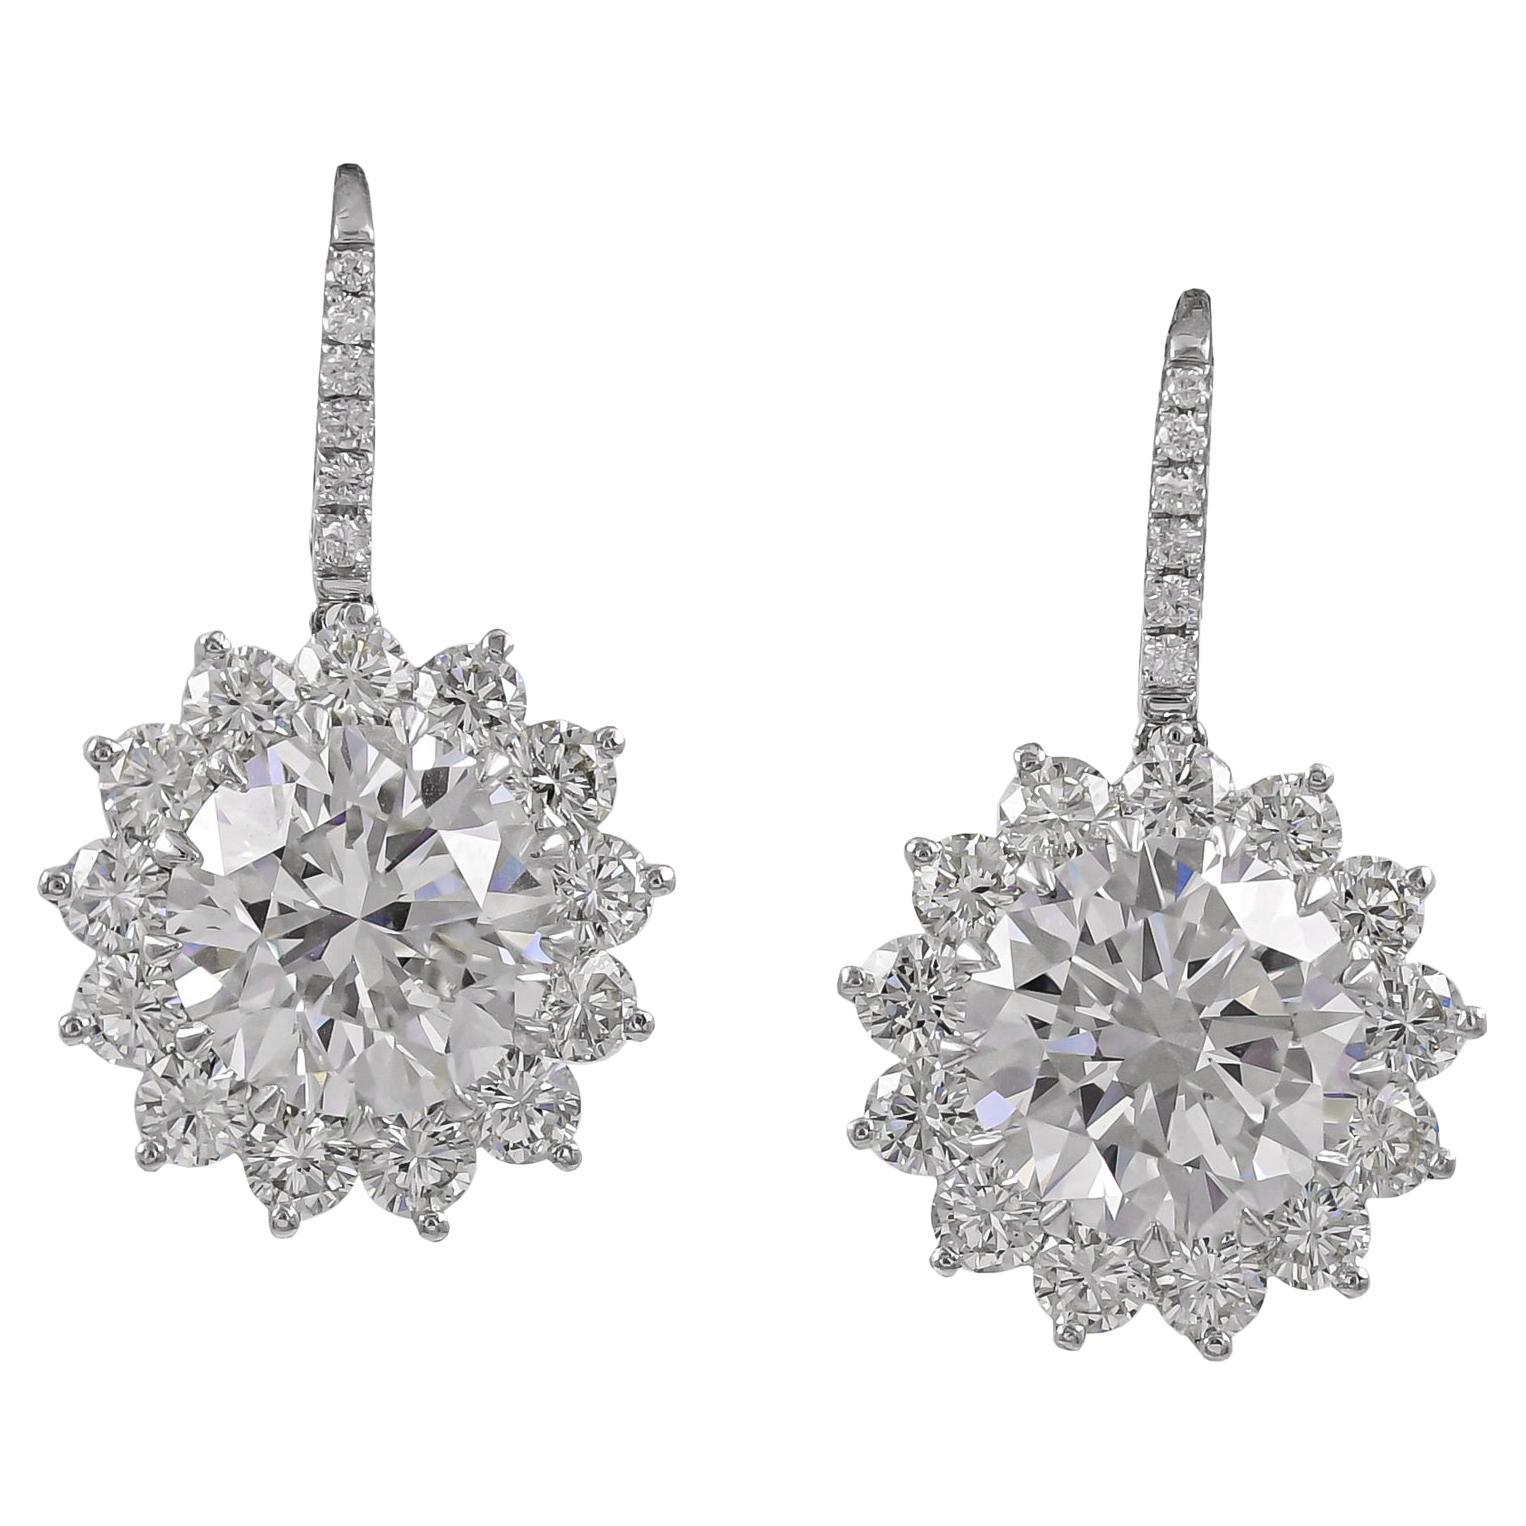 Spectra Fine Jewelry GIA Certified Diamond Dangle Earrings